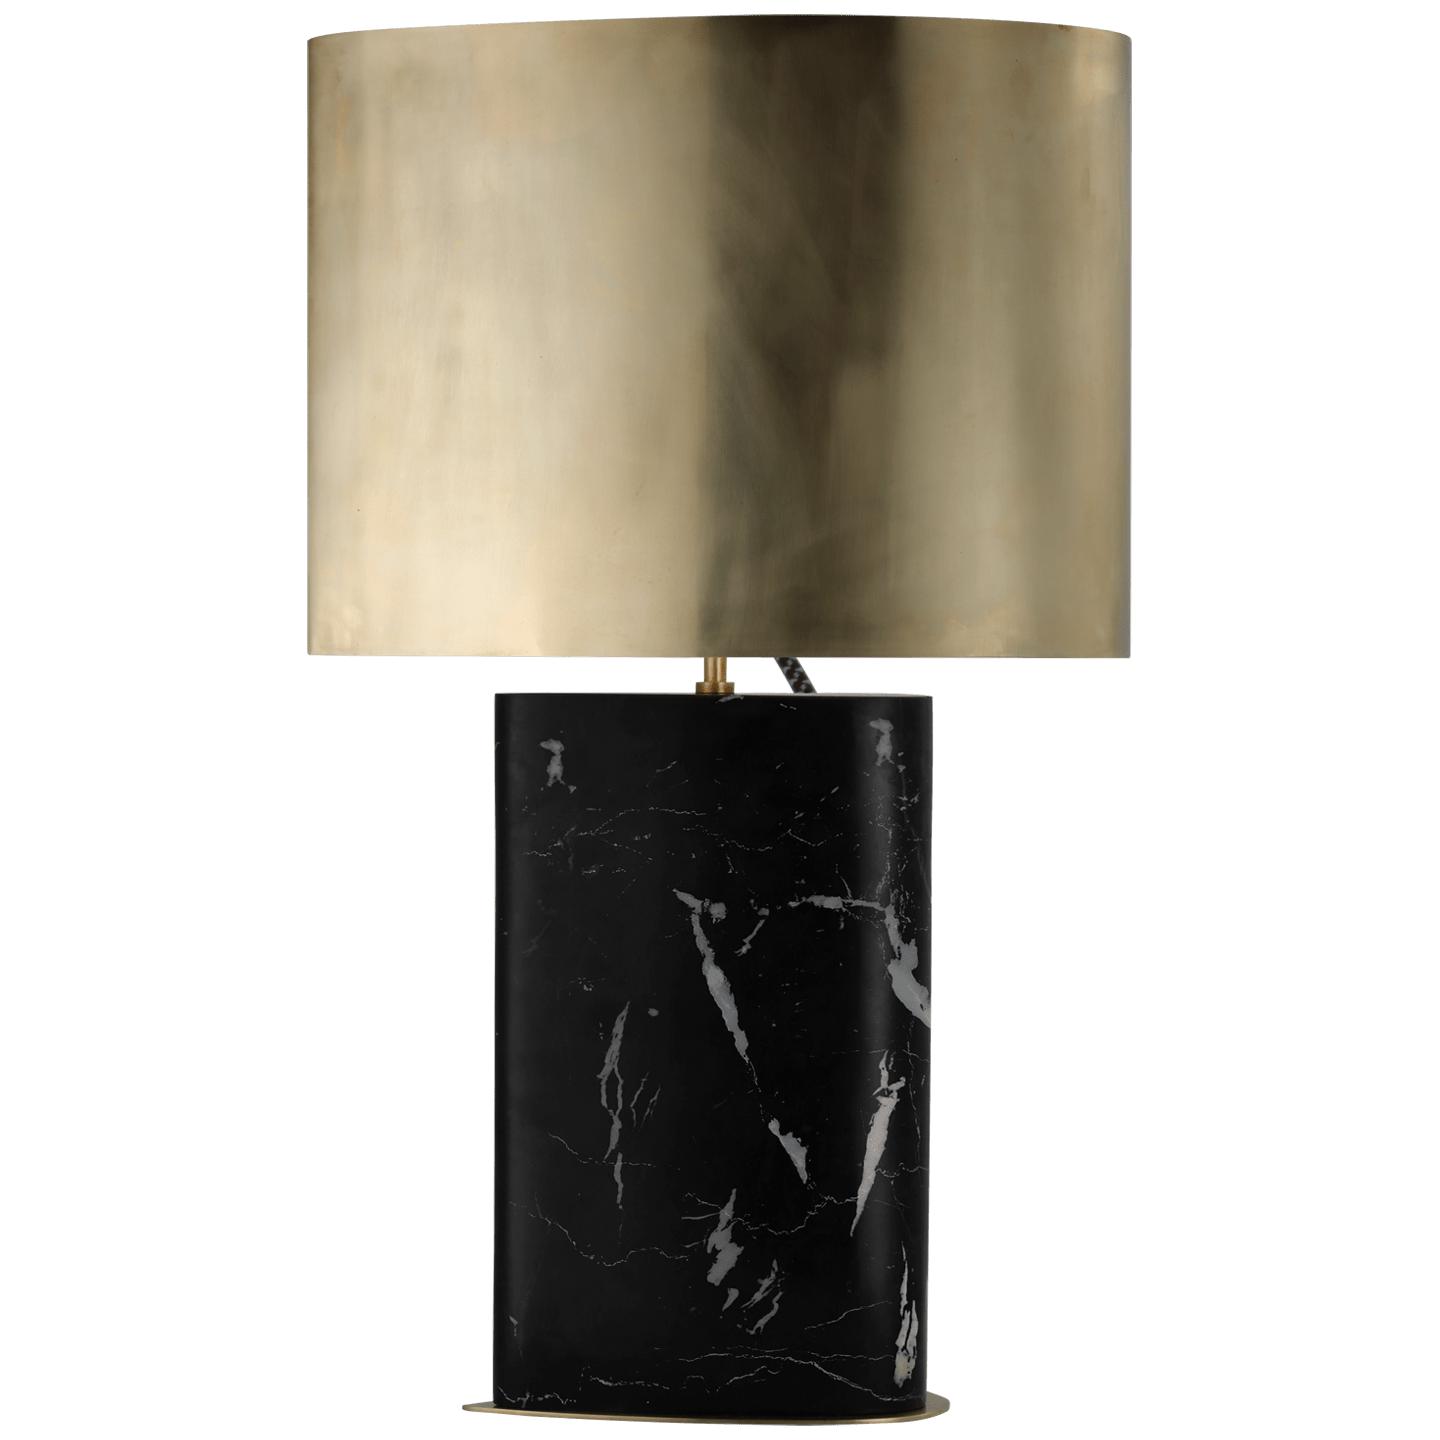 Купить Настольная лампа Murry Large Teardrop Table Lamp в интернет-магазине roooms.ru